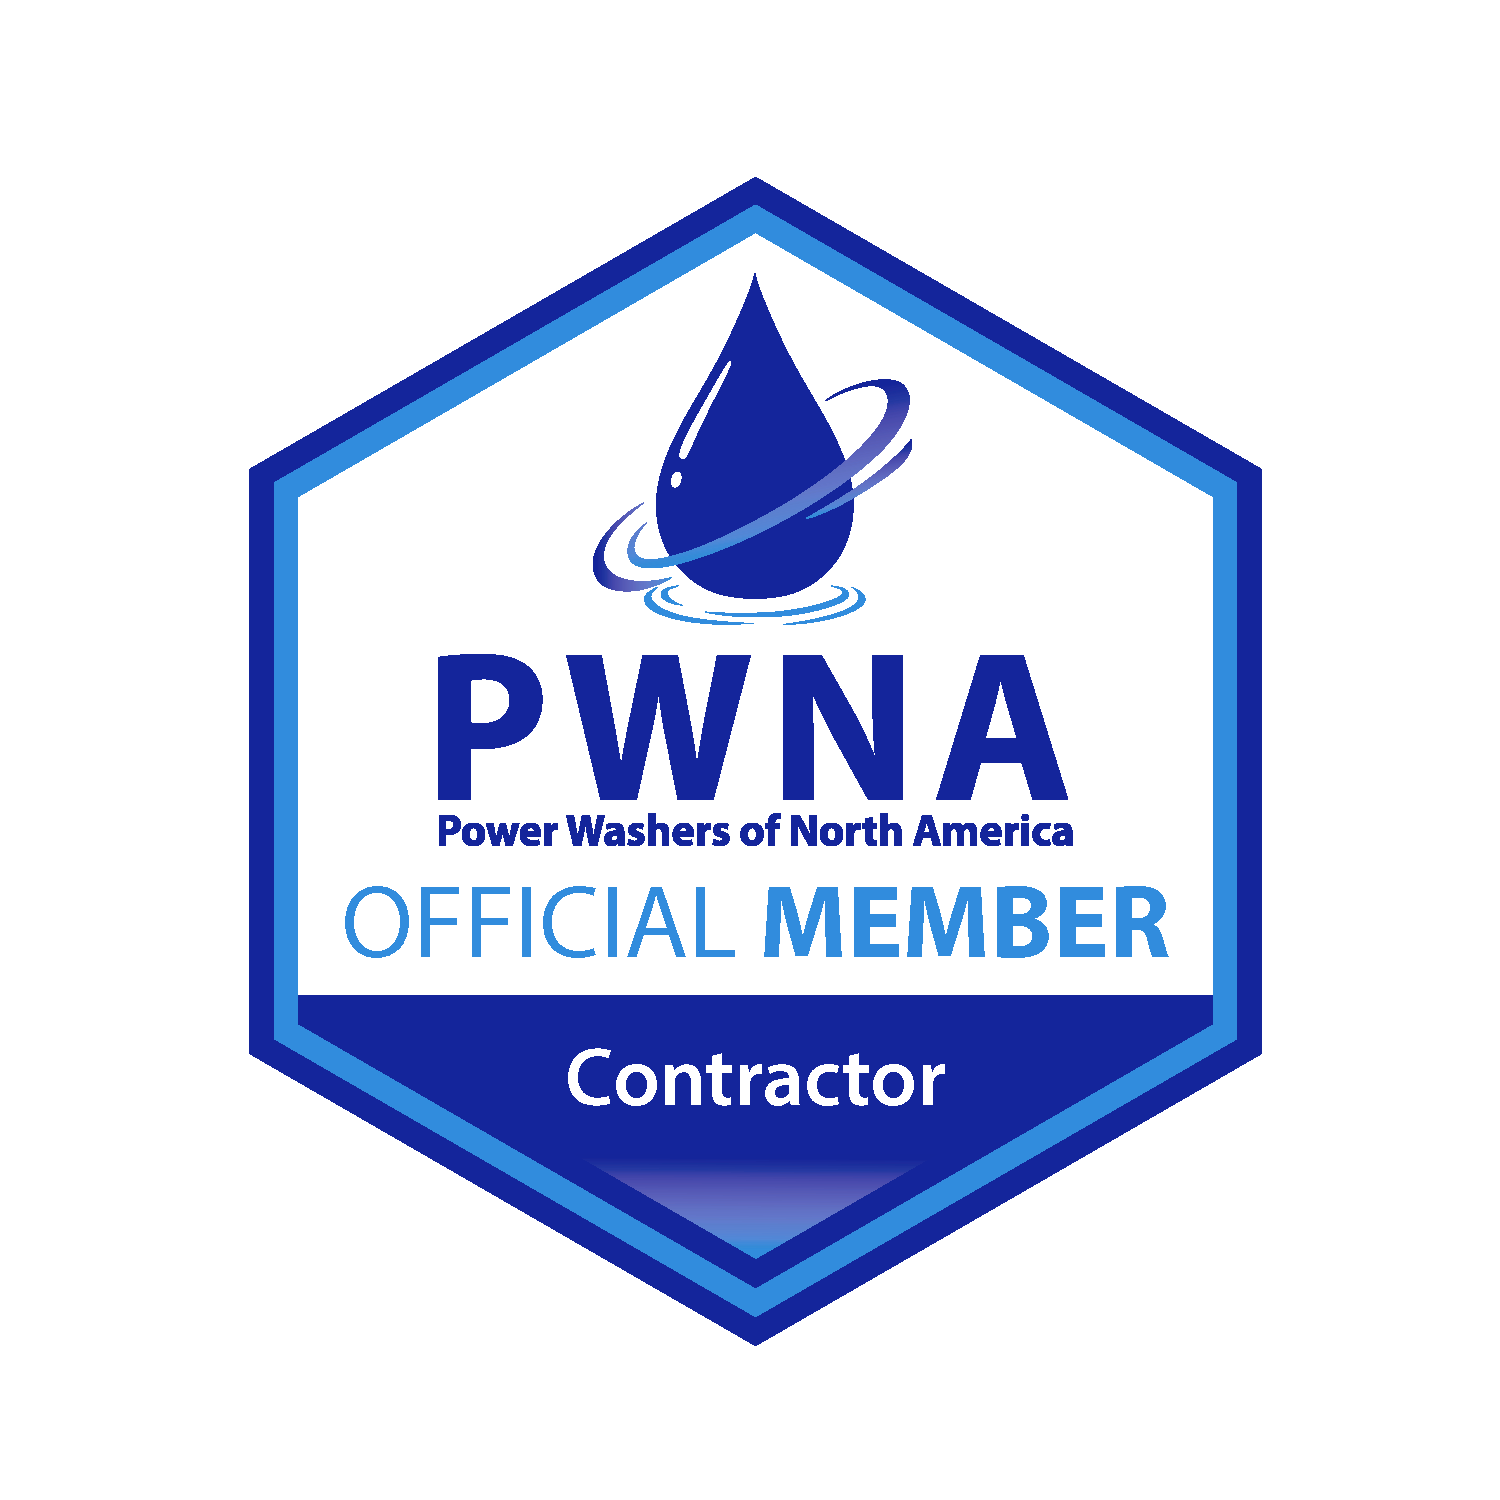 PWNA "Pressure Washers of North America" Logo